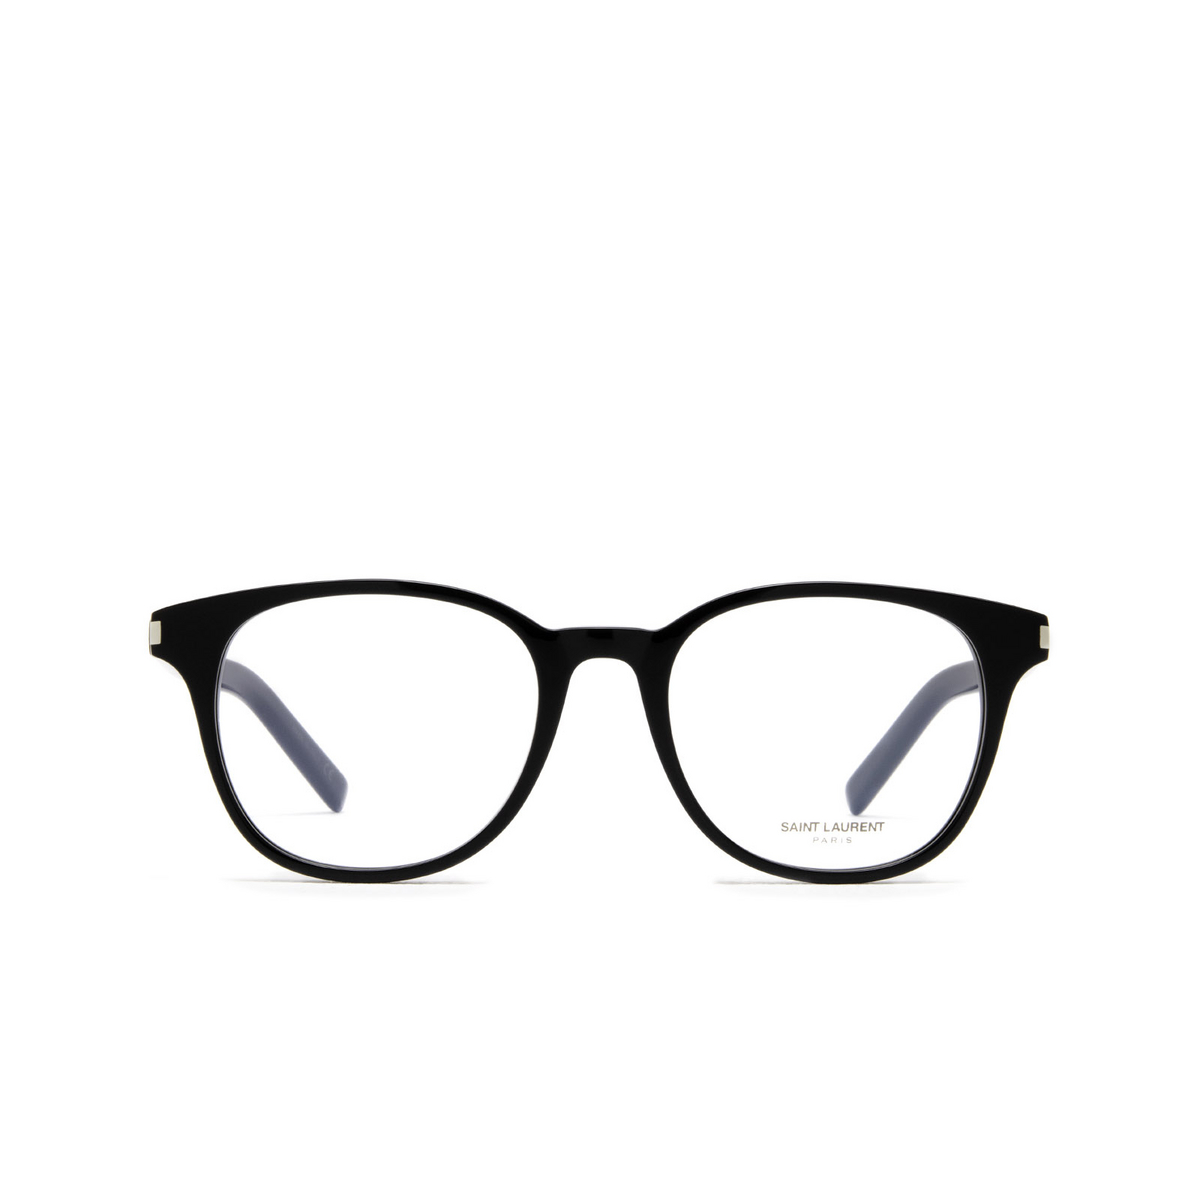 Saint Laurent® Round Eyeglasses: SL 523 color 004 Black - front view